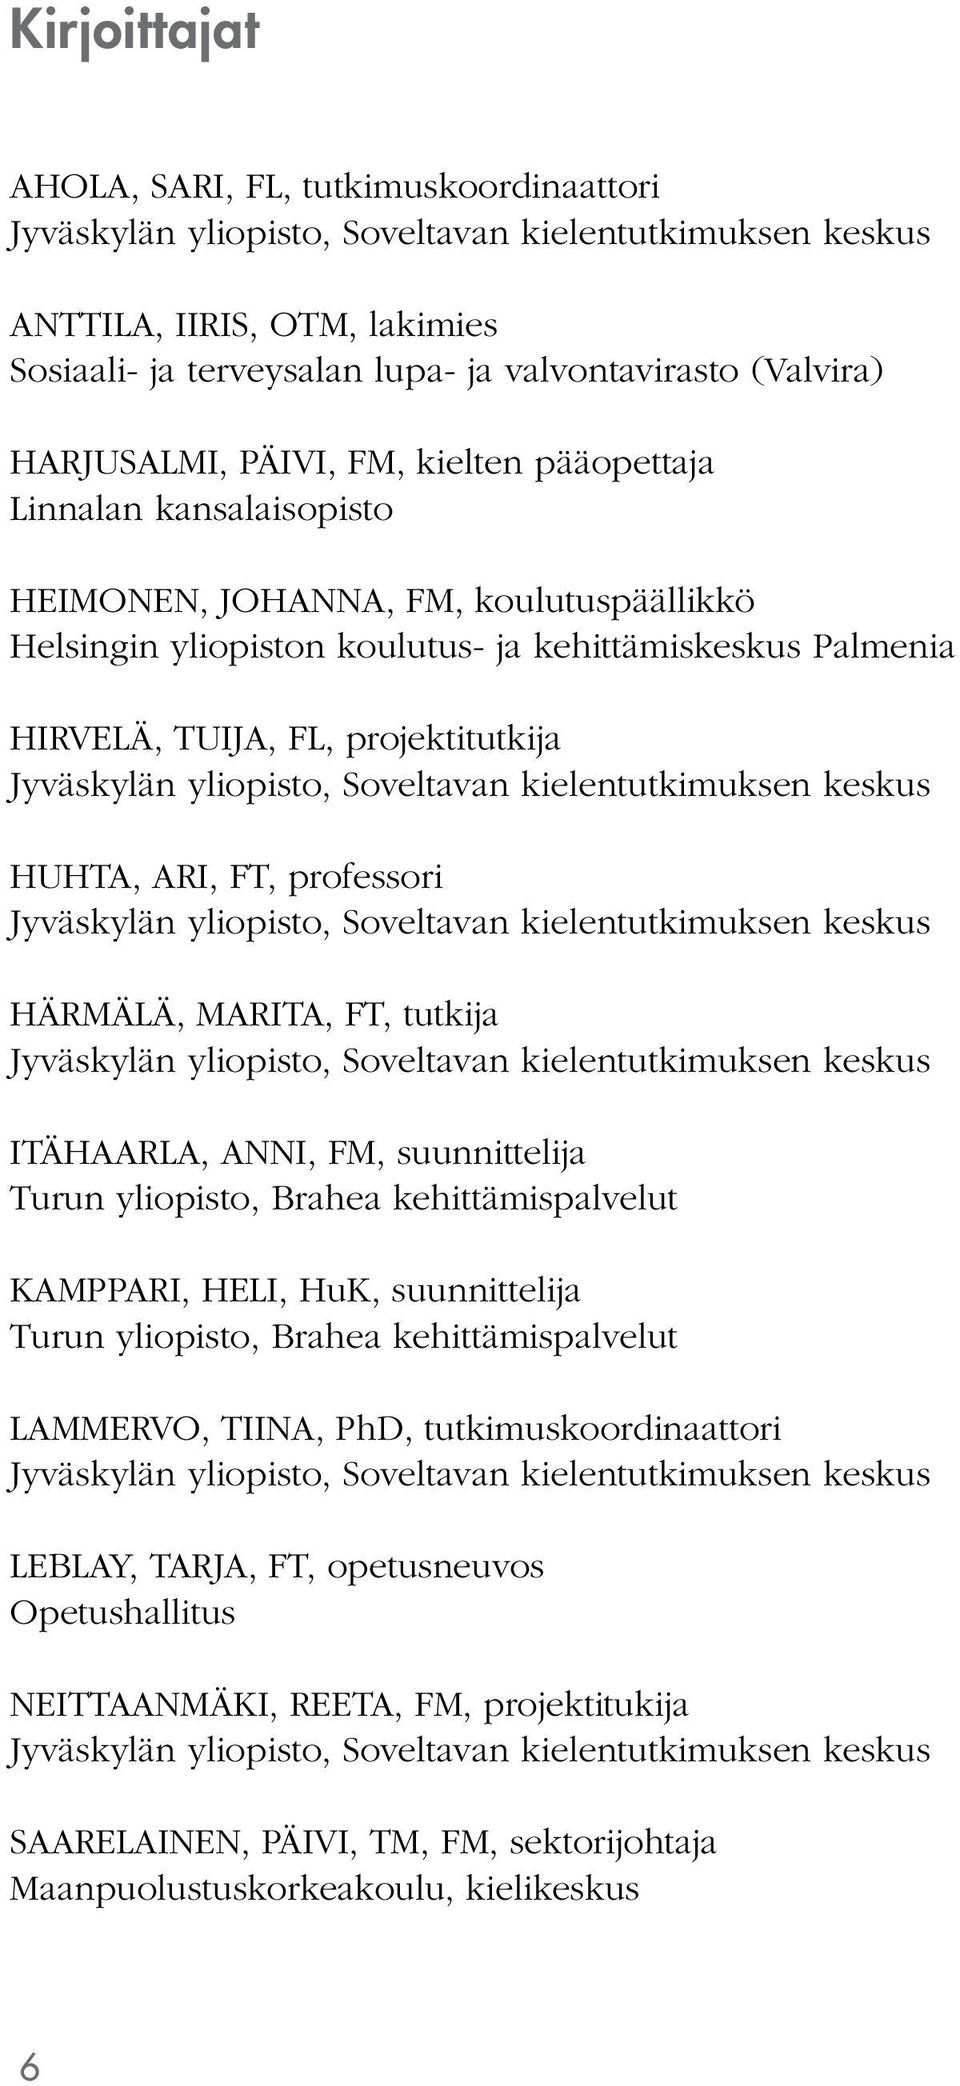 projektitutkija Jyväskylän yliopisto, Soveltavan kielentutkimuksen keskus HUHTA, ARI, FT, professori Jyväskylän yliopisto, Soveltavan kielentutkimuksen keskus HÄRMÄLÄ, MARITA, FT, tutkija Jyväskylän